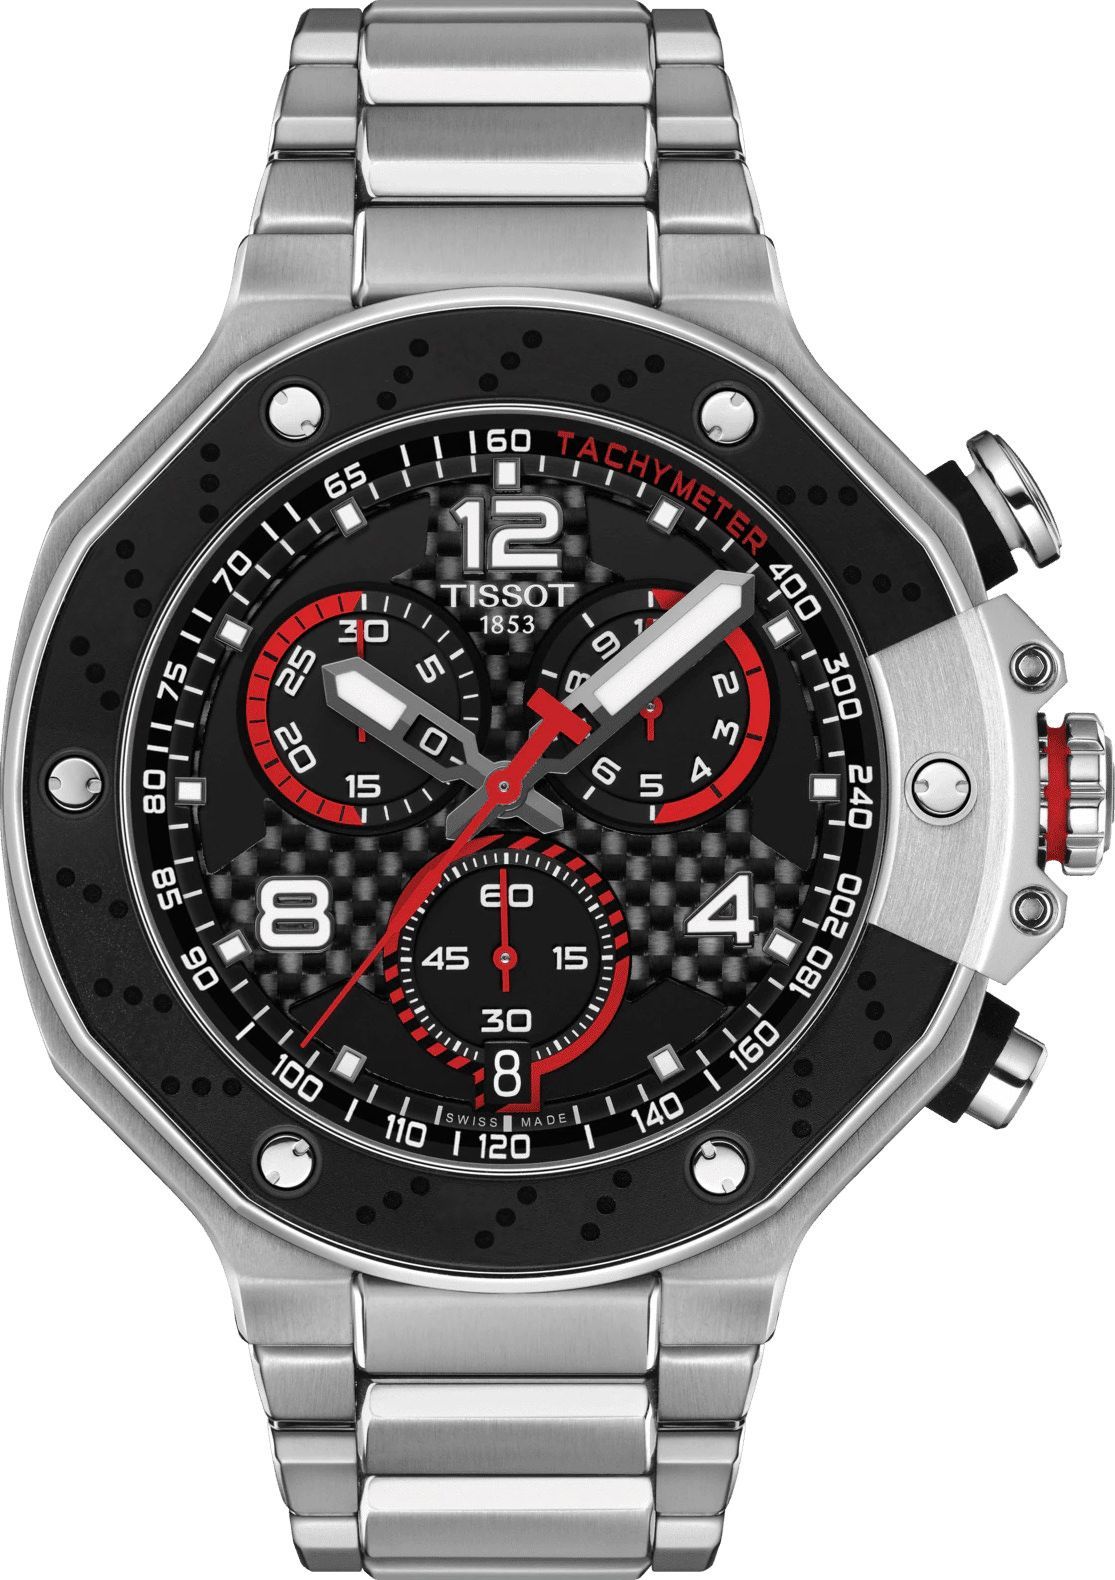 Tissot T-Sport Tissot T-Race MOTOGP Black Dial 29.8 mm Quartz Watch For Men - 1